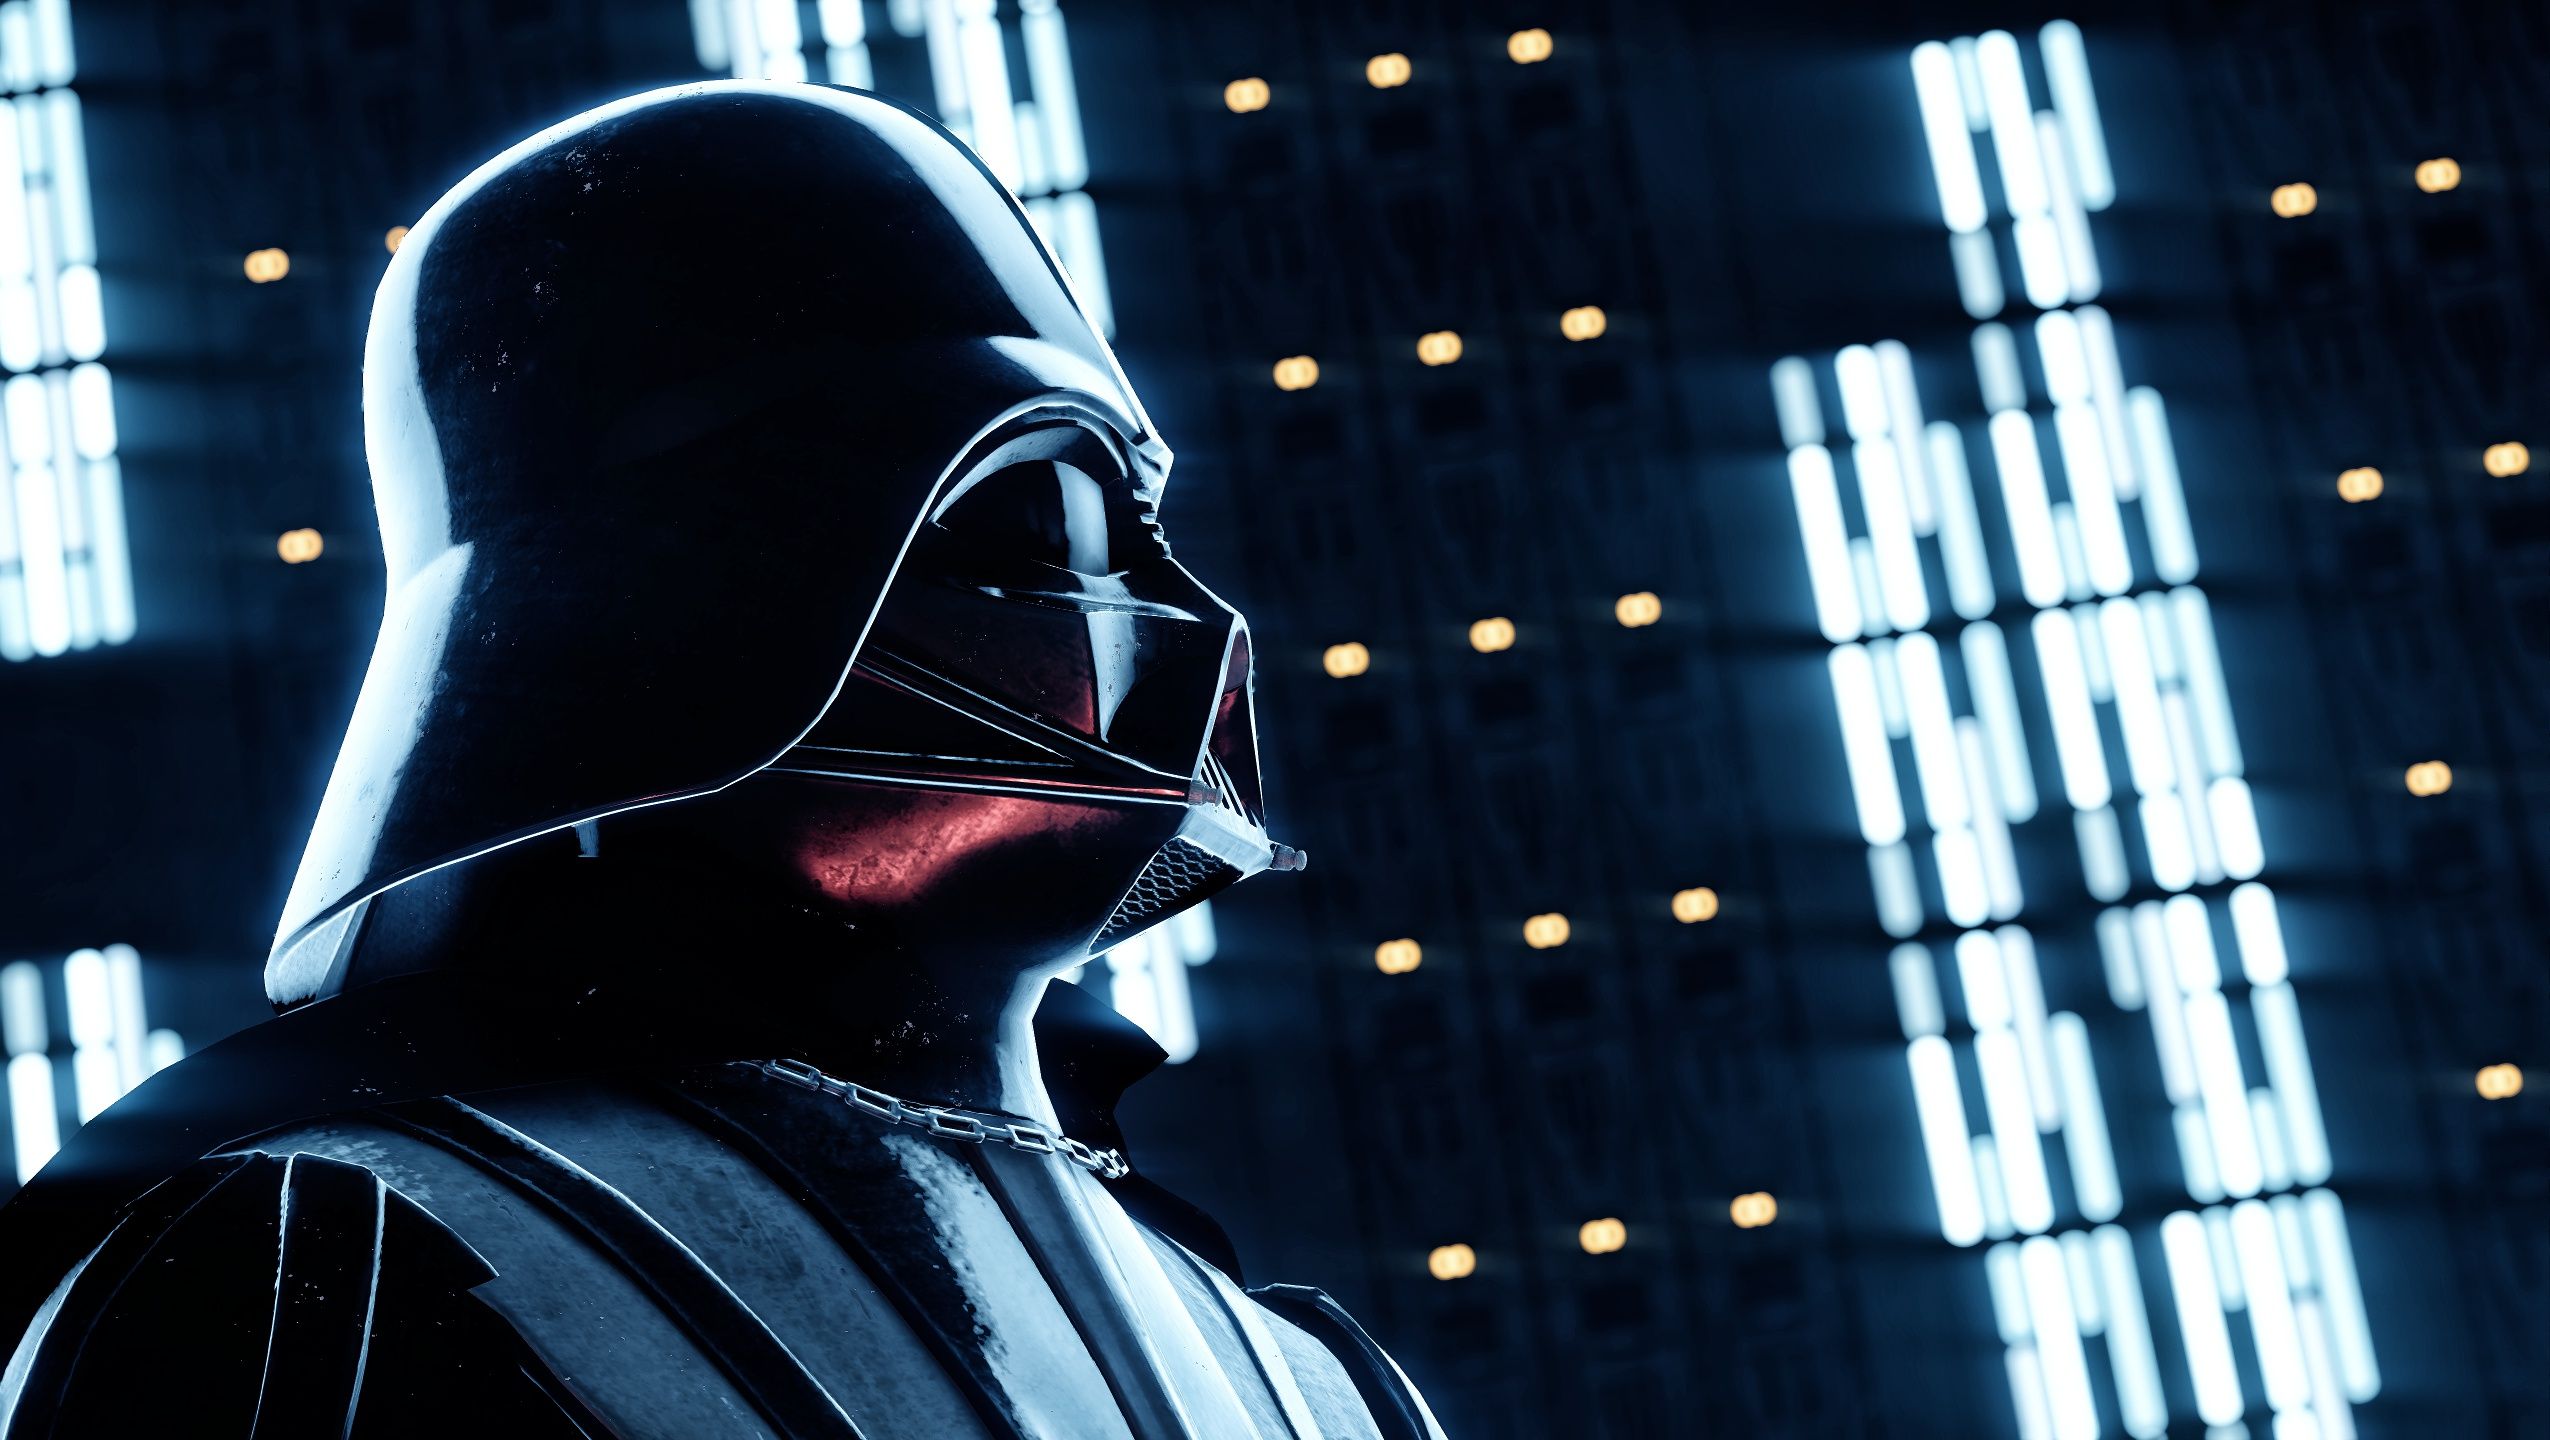 Darth Vader, Star Wars, Star Wars Battlefront II, Video games Wallpaper HD / Desktop and Mobile Background